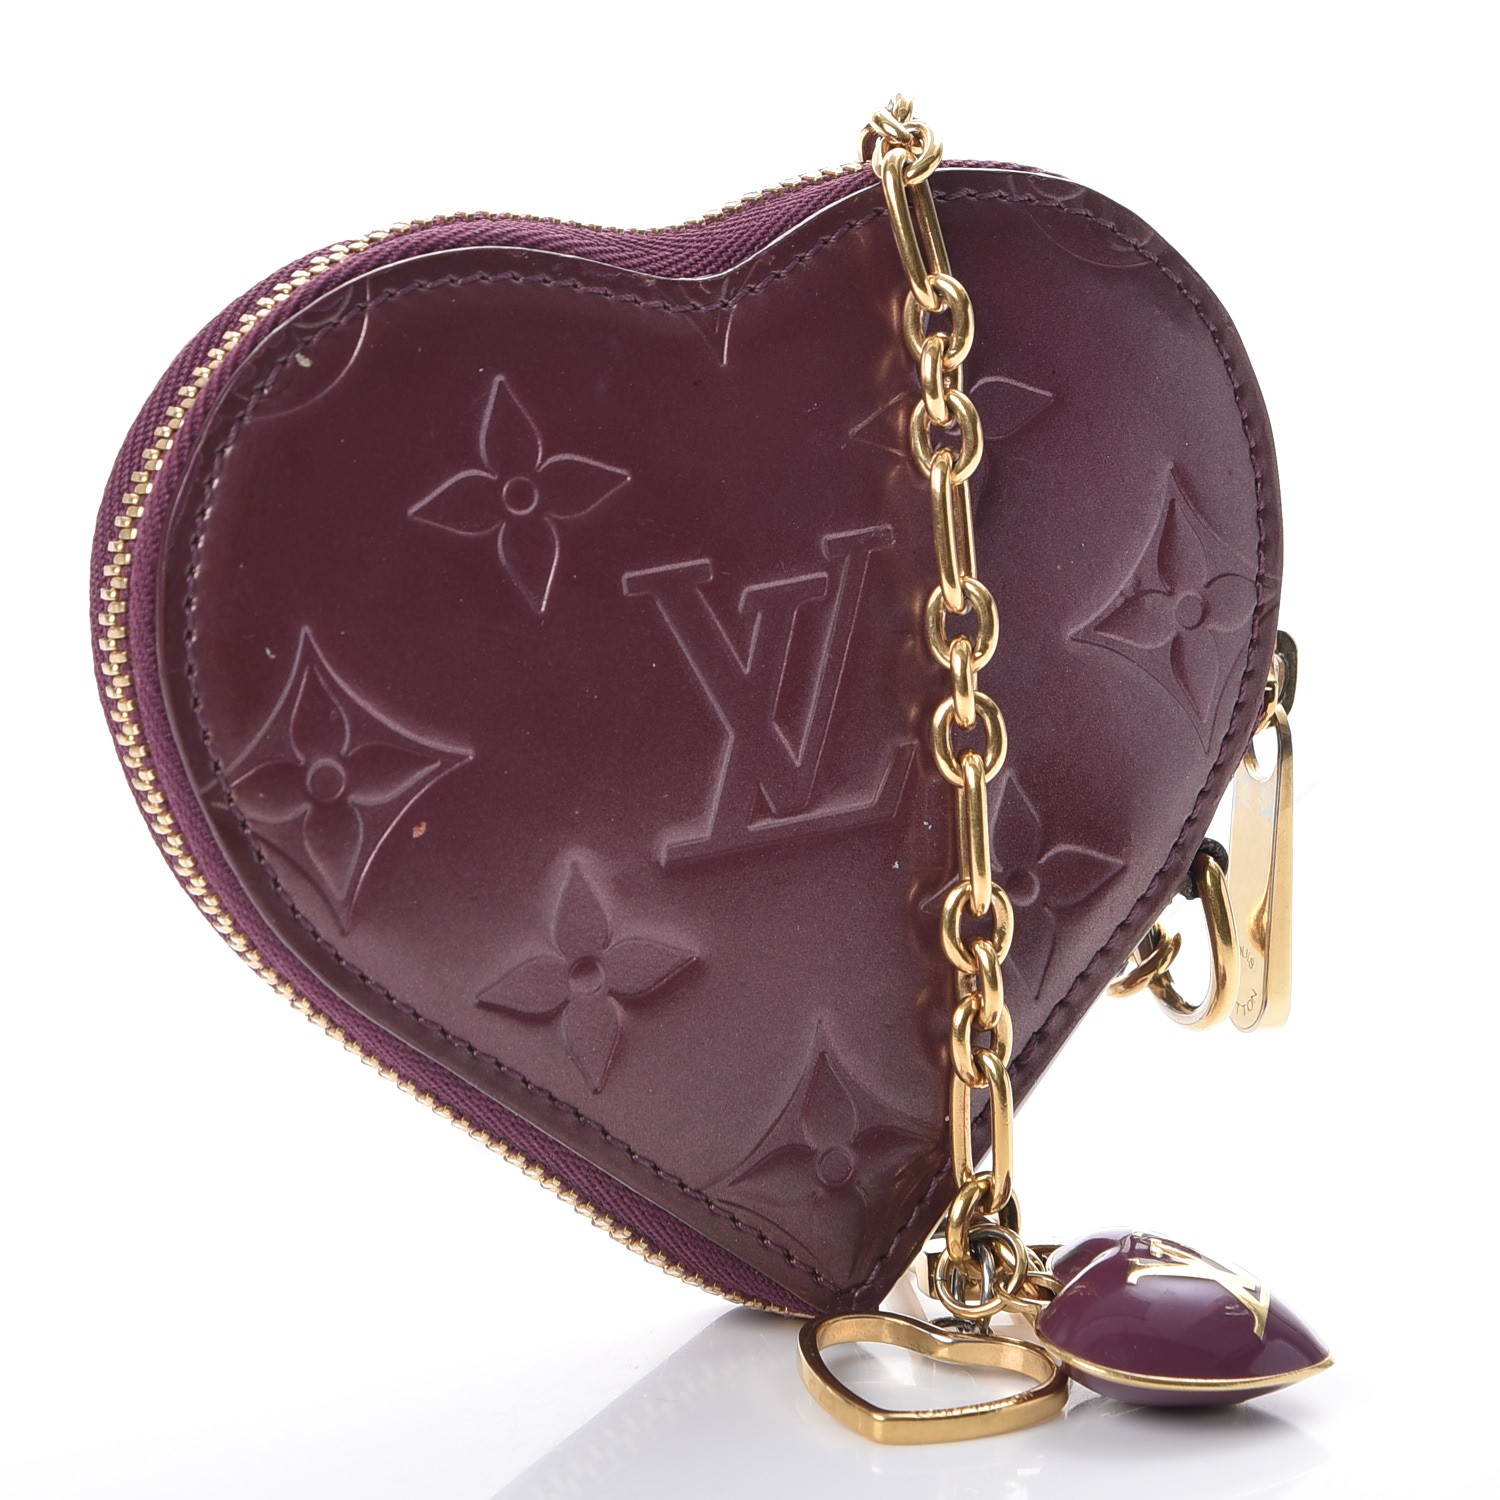 LOUIS VUITTON Vernis Heart Coin Purse Violette 251683